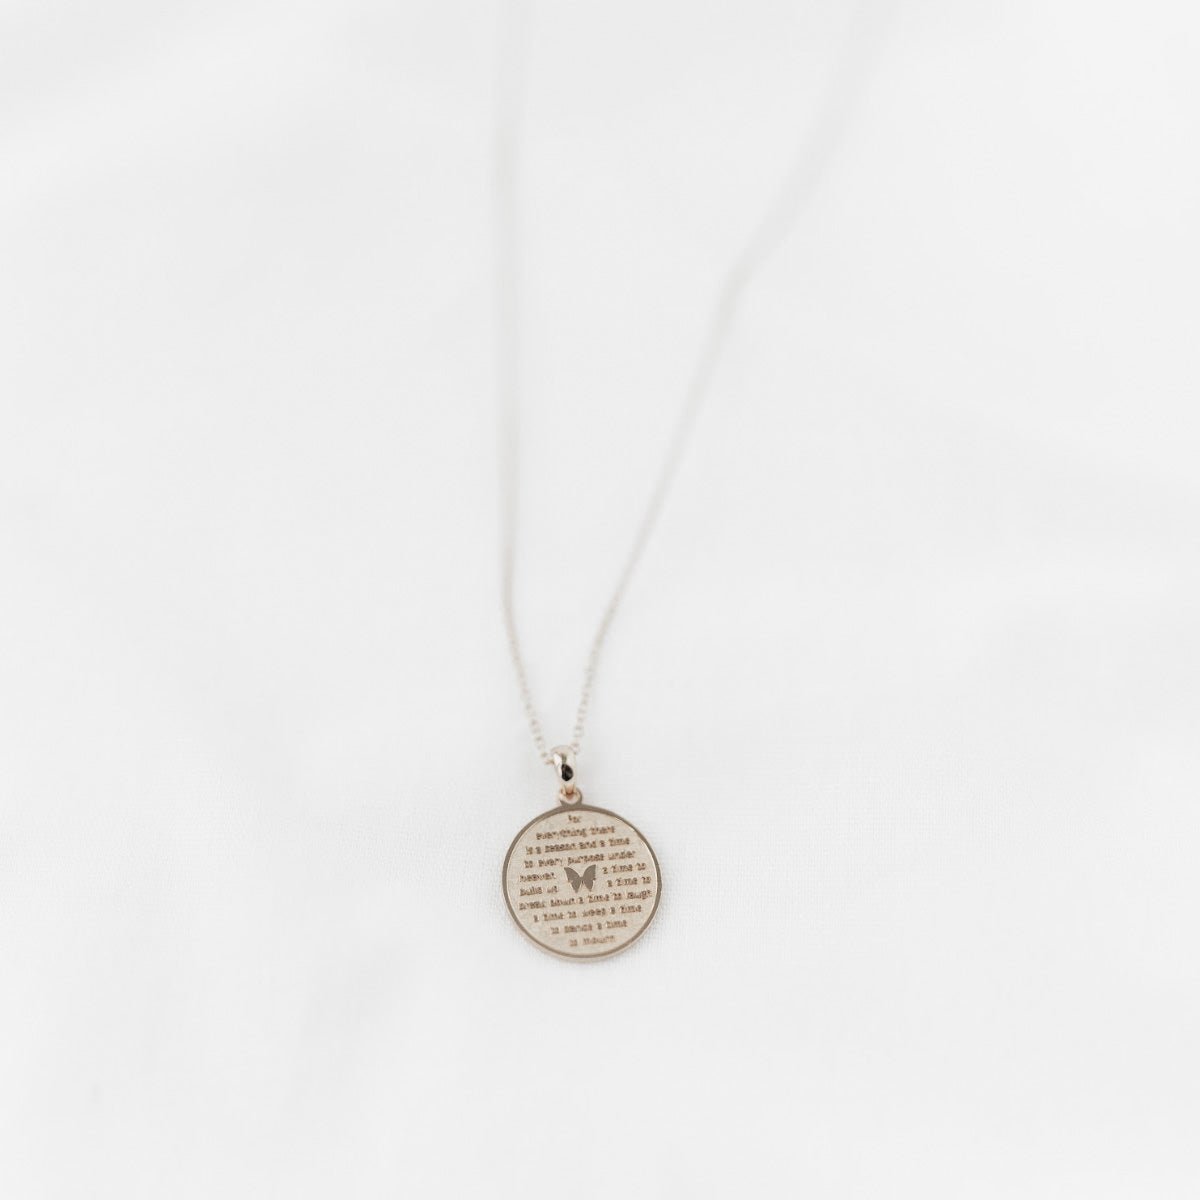 Know Your Season - Necklace | Kette für €54.99 von So Loved Manufacture